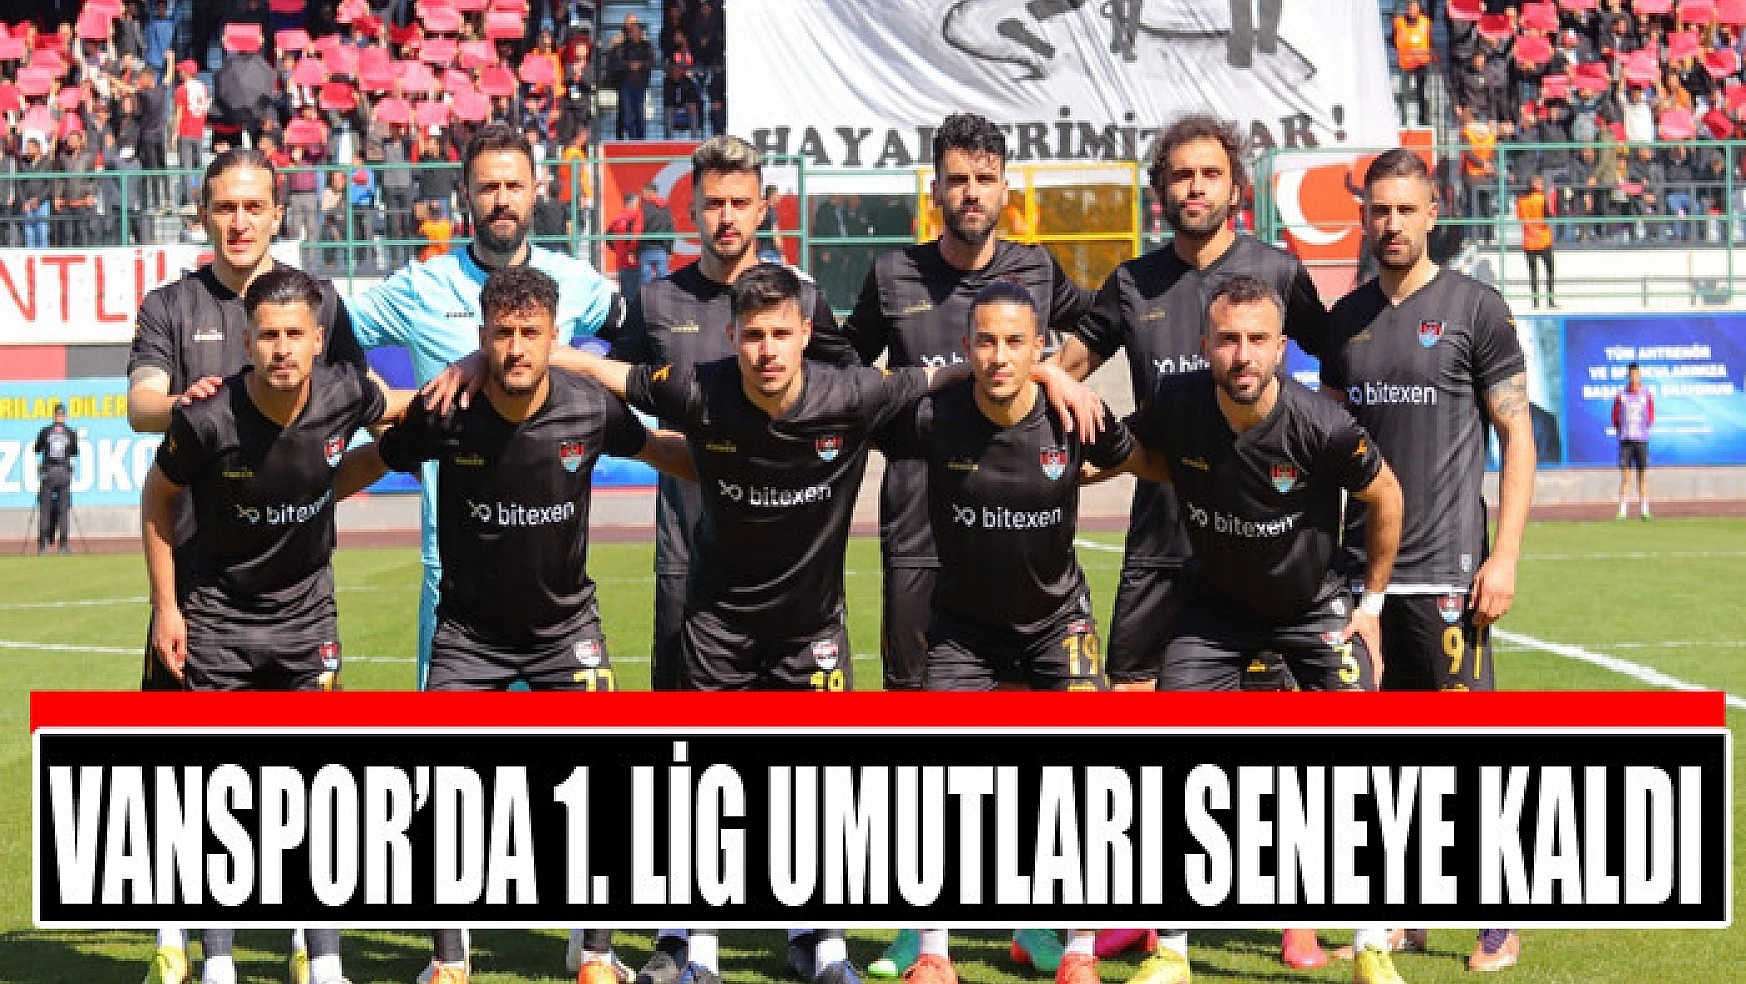 Vanspor'da 1. Lig umutları seneye kaldı